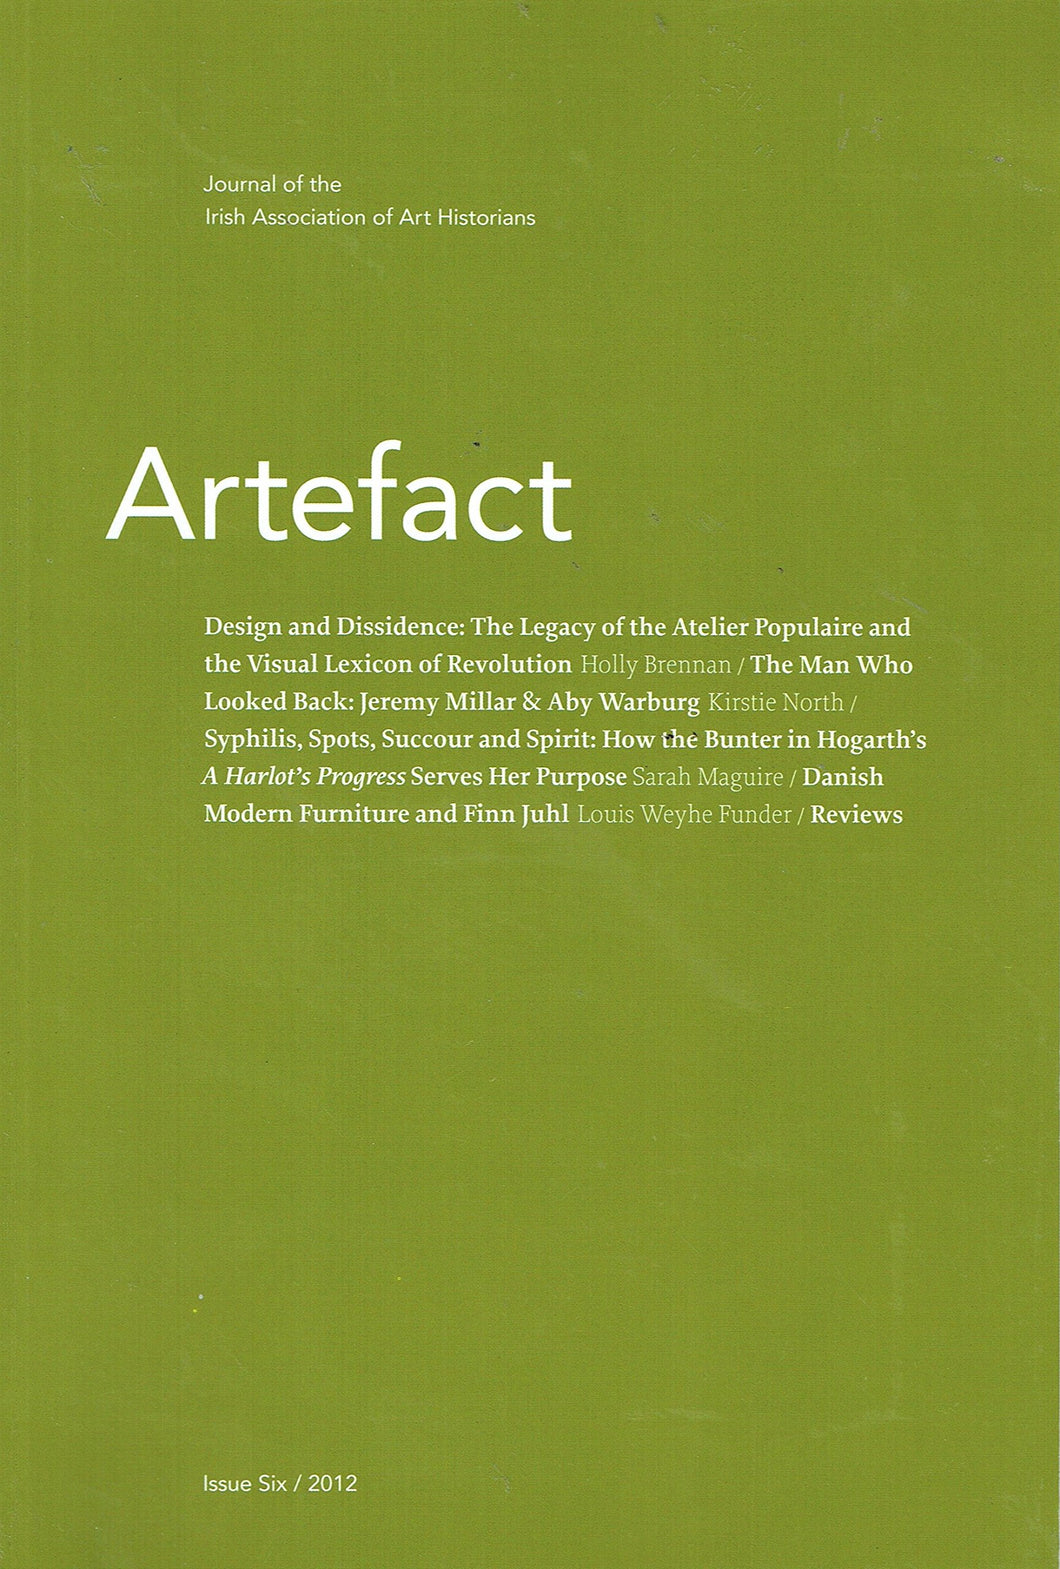 Artefact, Issue Six/2012: Journal of the Irish Association of Art Historians